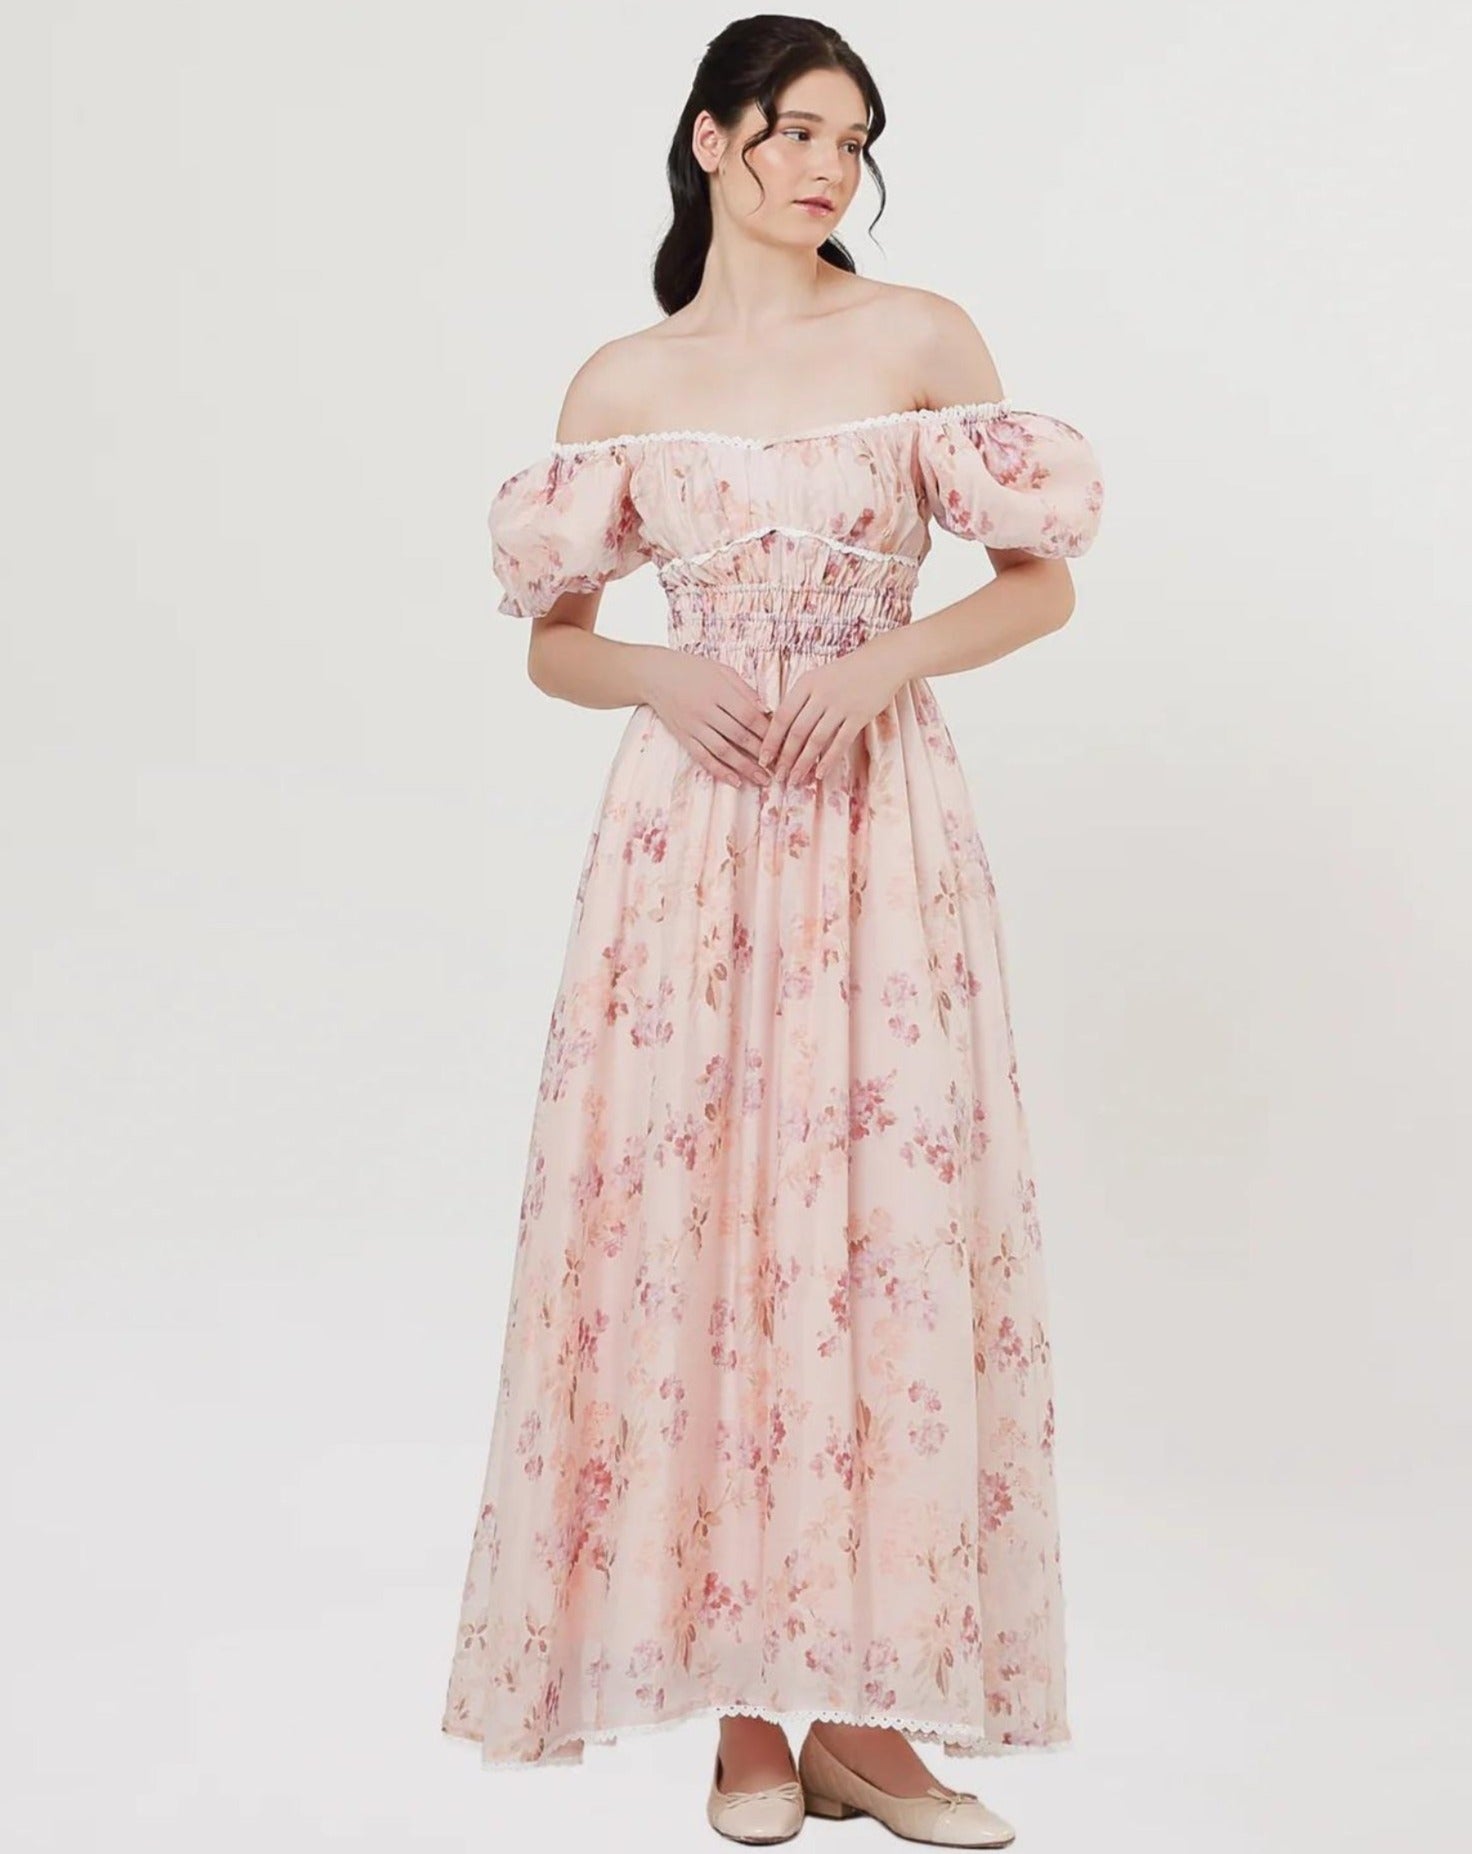 Isabella Dress in Floral Pink (3 LEFT)